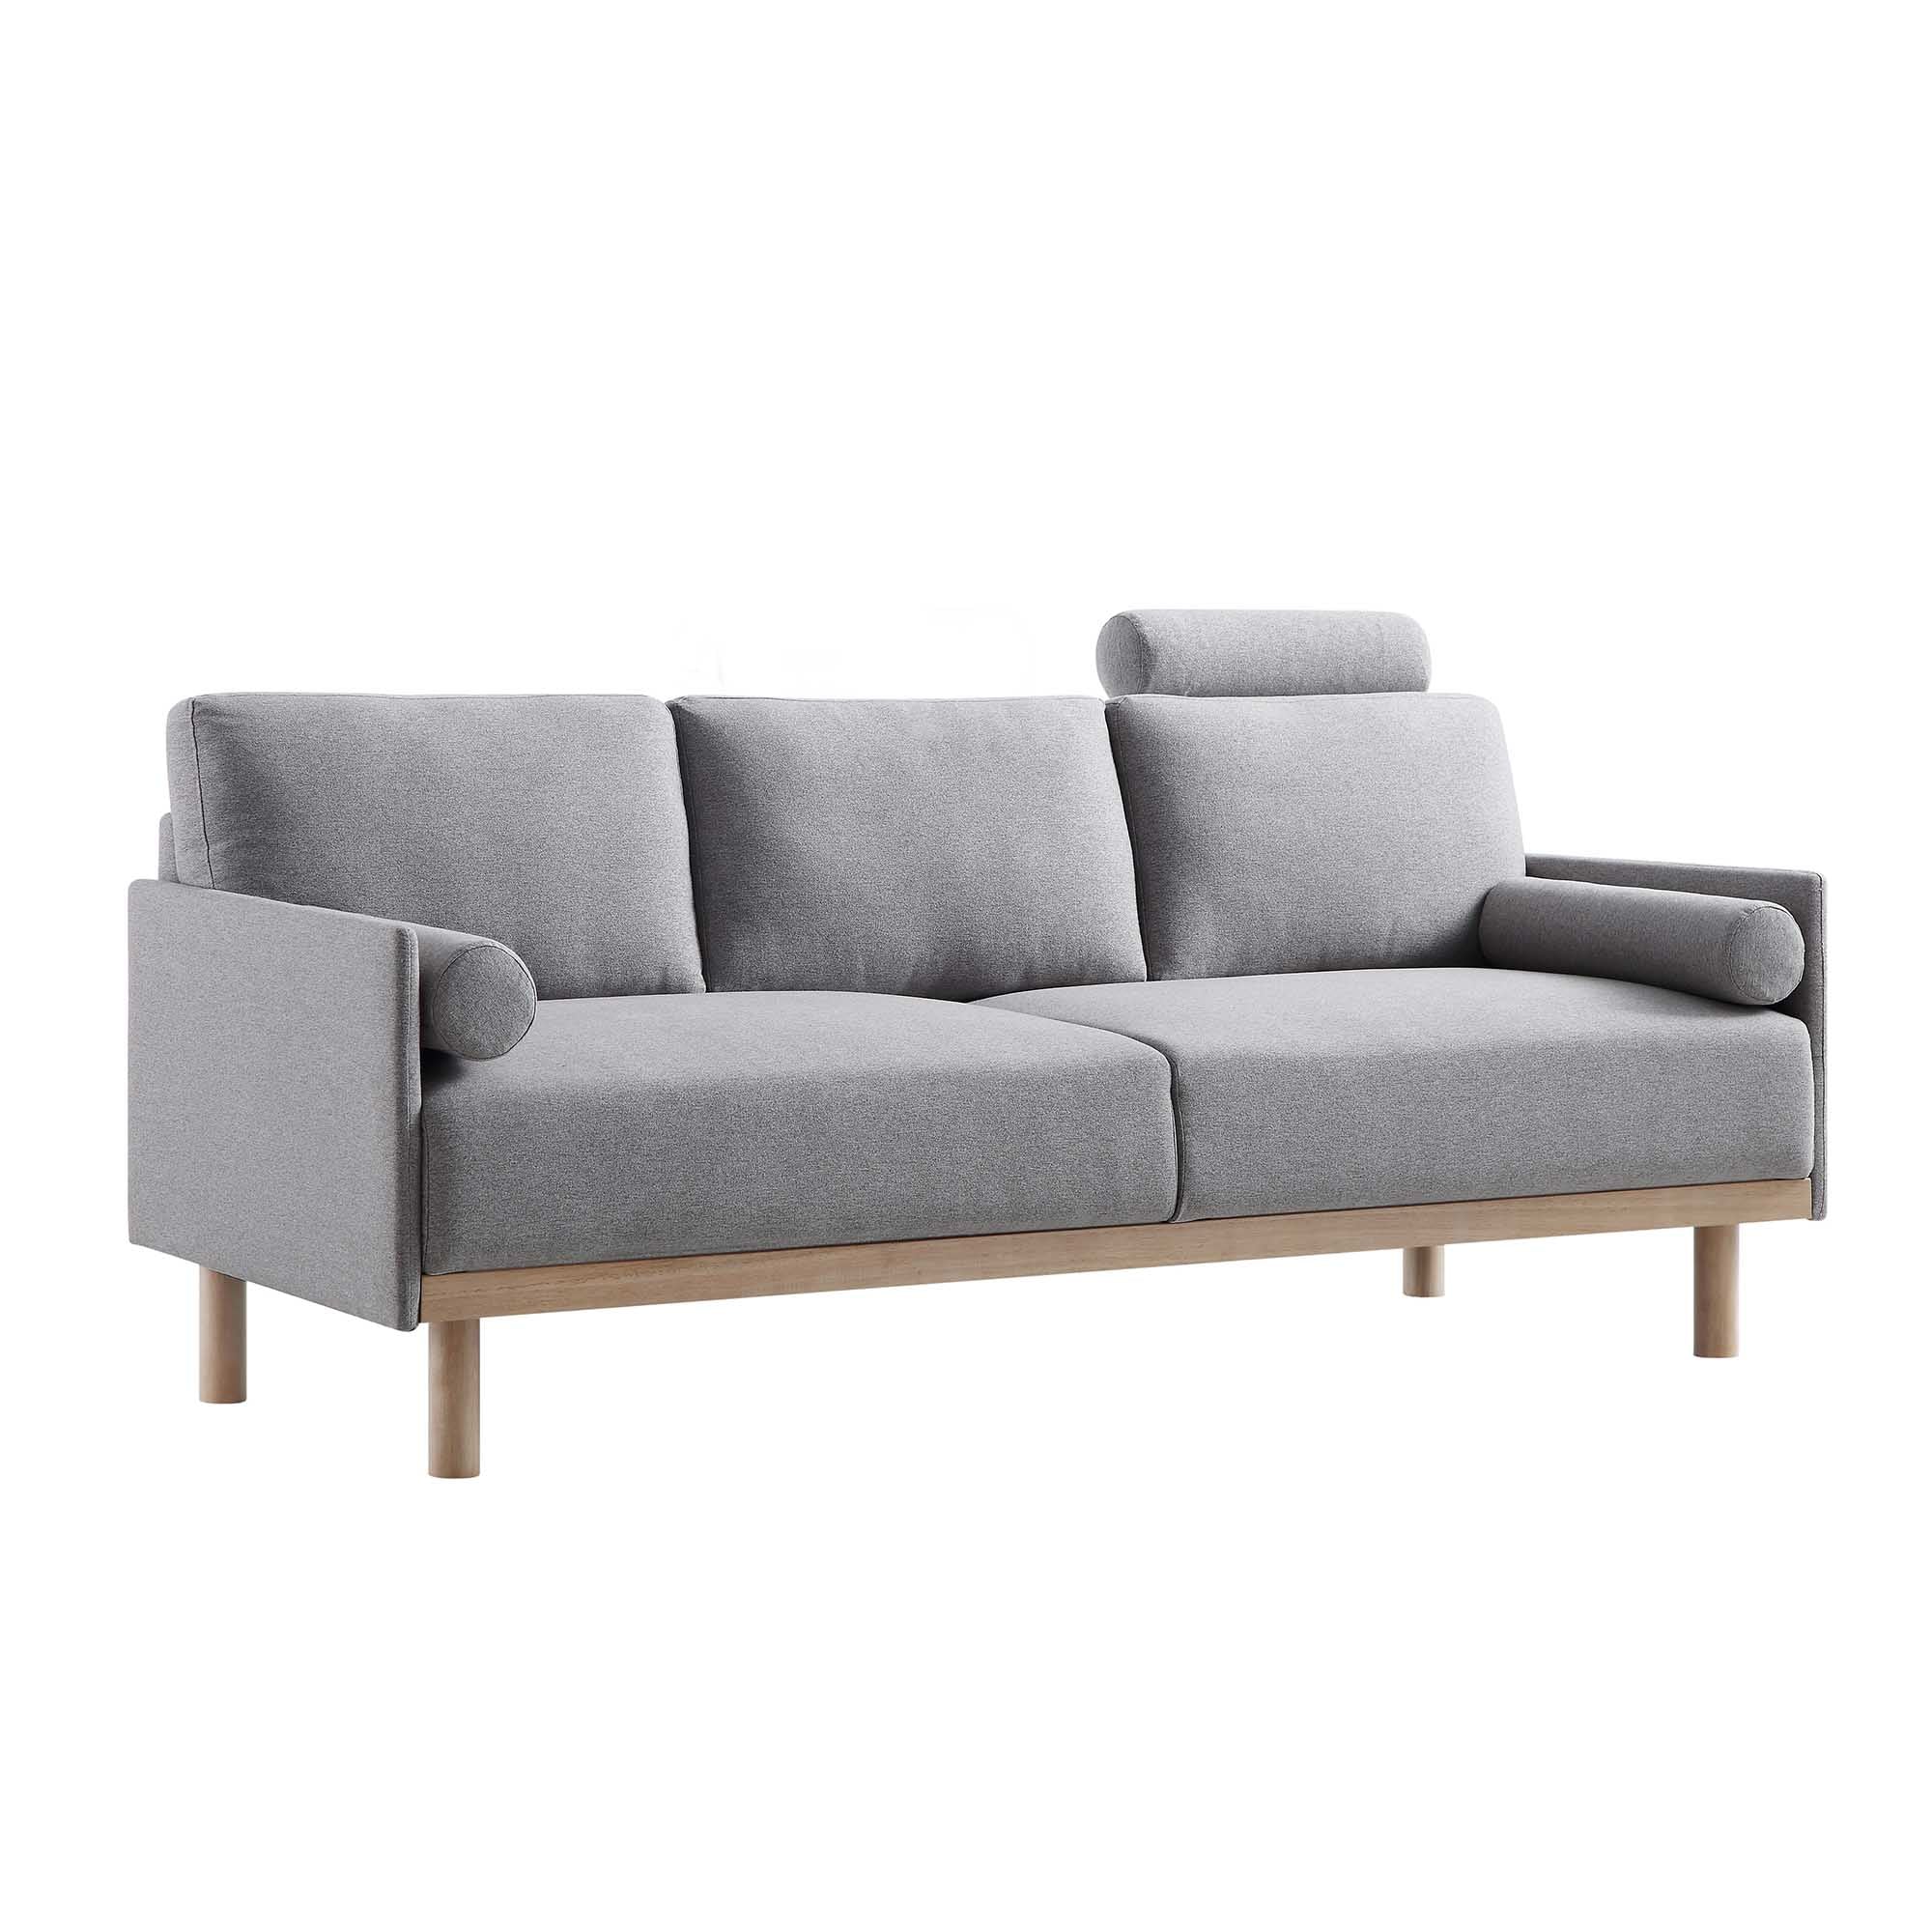 Timber Grey Marl Fabric Sofa, 3-Seater